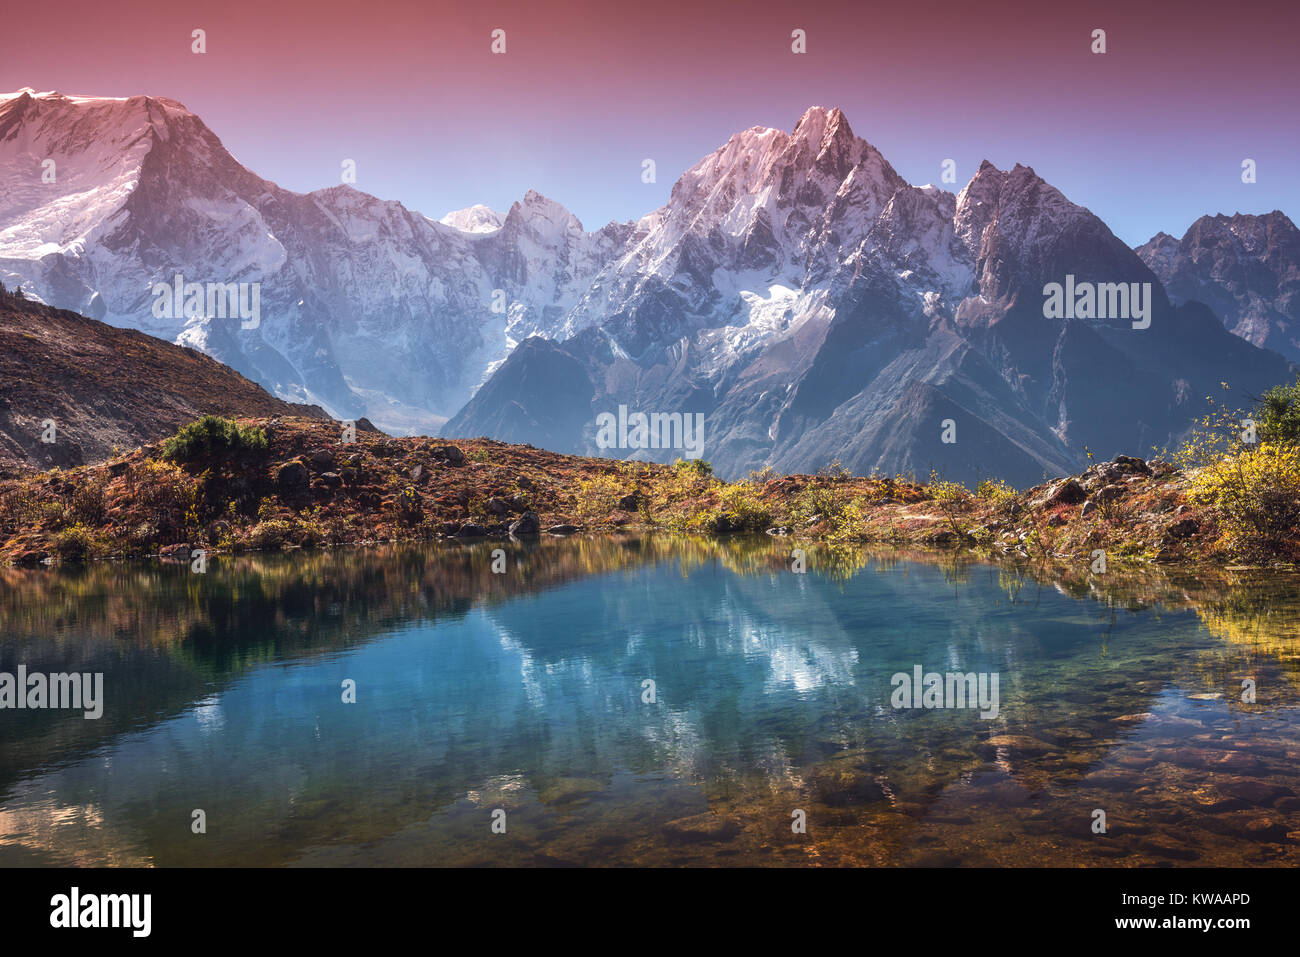 Beau paysage avec de hautes montagnes aux sommets couverts de neige, ciel reflété dans le lac. Vallée de montagne avec la réflexion dans l'eau au lever du soleil. Le Népal. Suis Banque D'Images